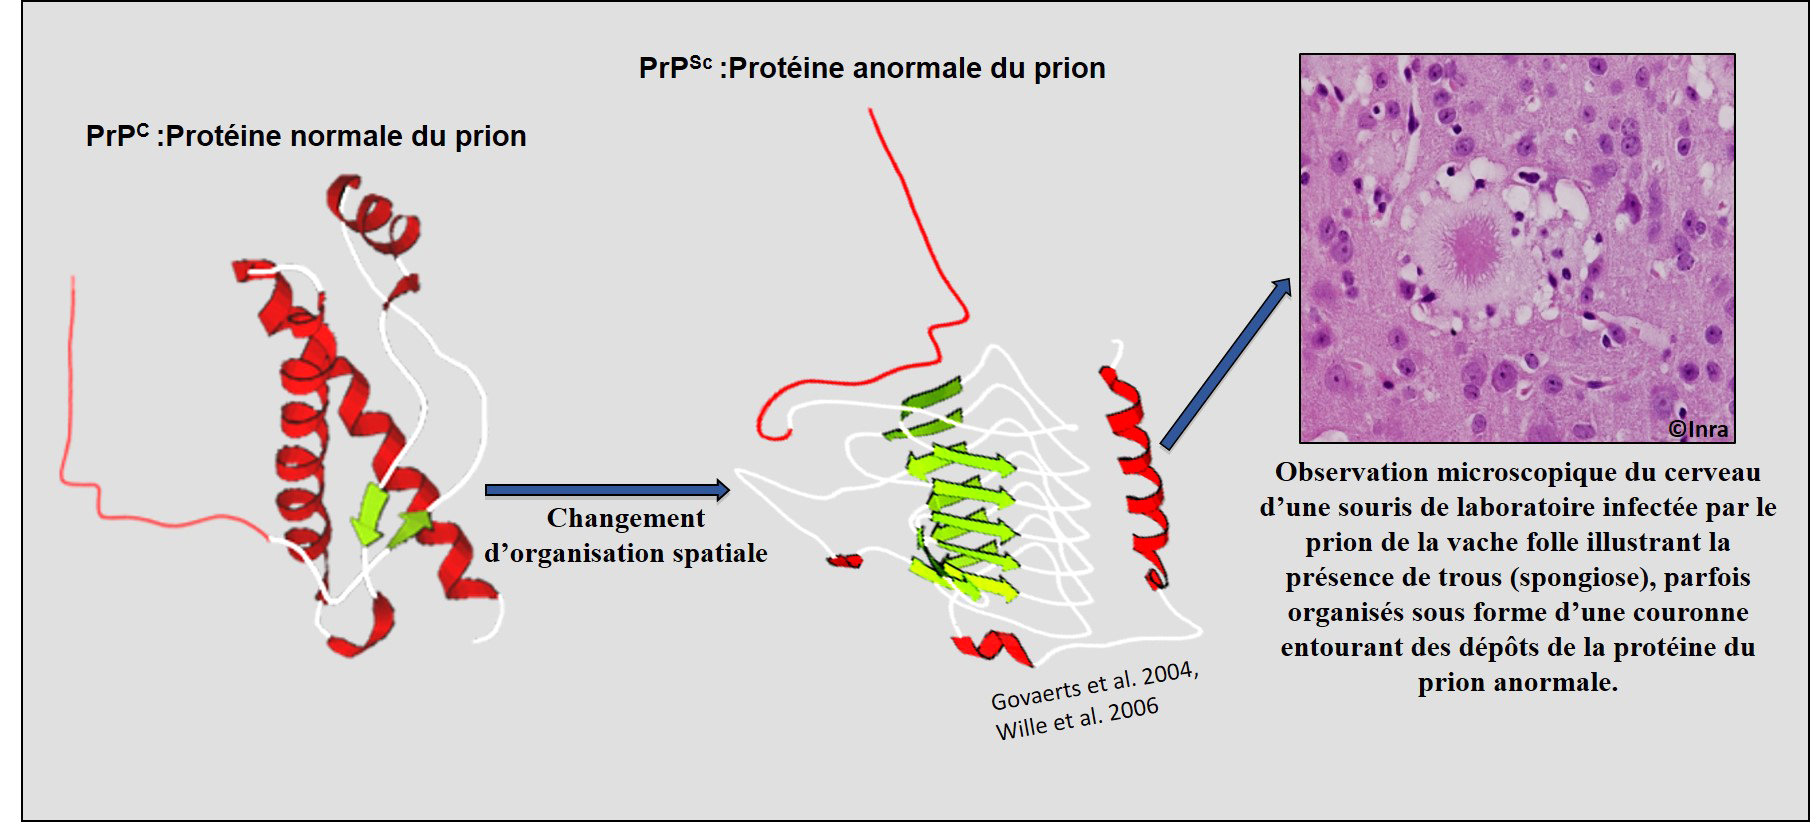 C’est sous sa forme anormale que la protéine prion devient pathogène. © Inra, Mohammed Moudjou